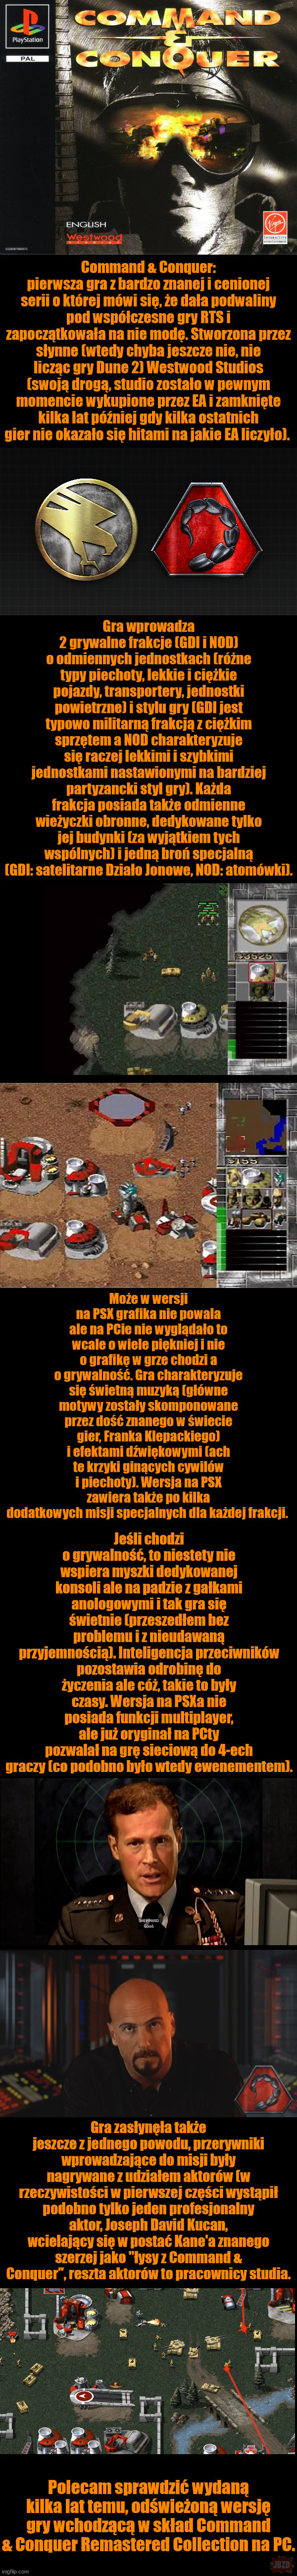 Retro PSX - Command & Conquer